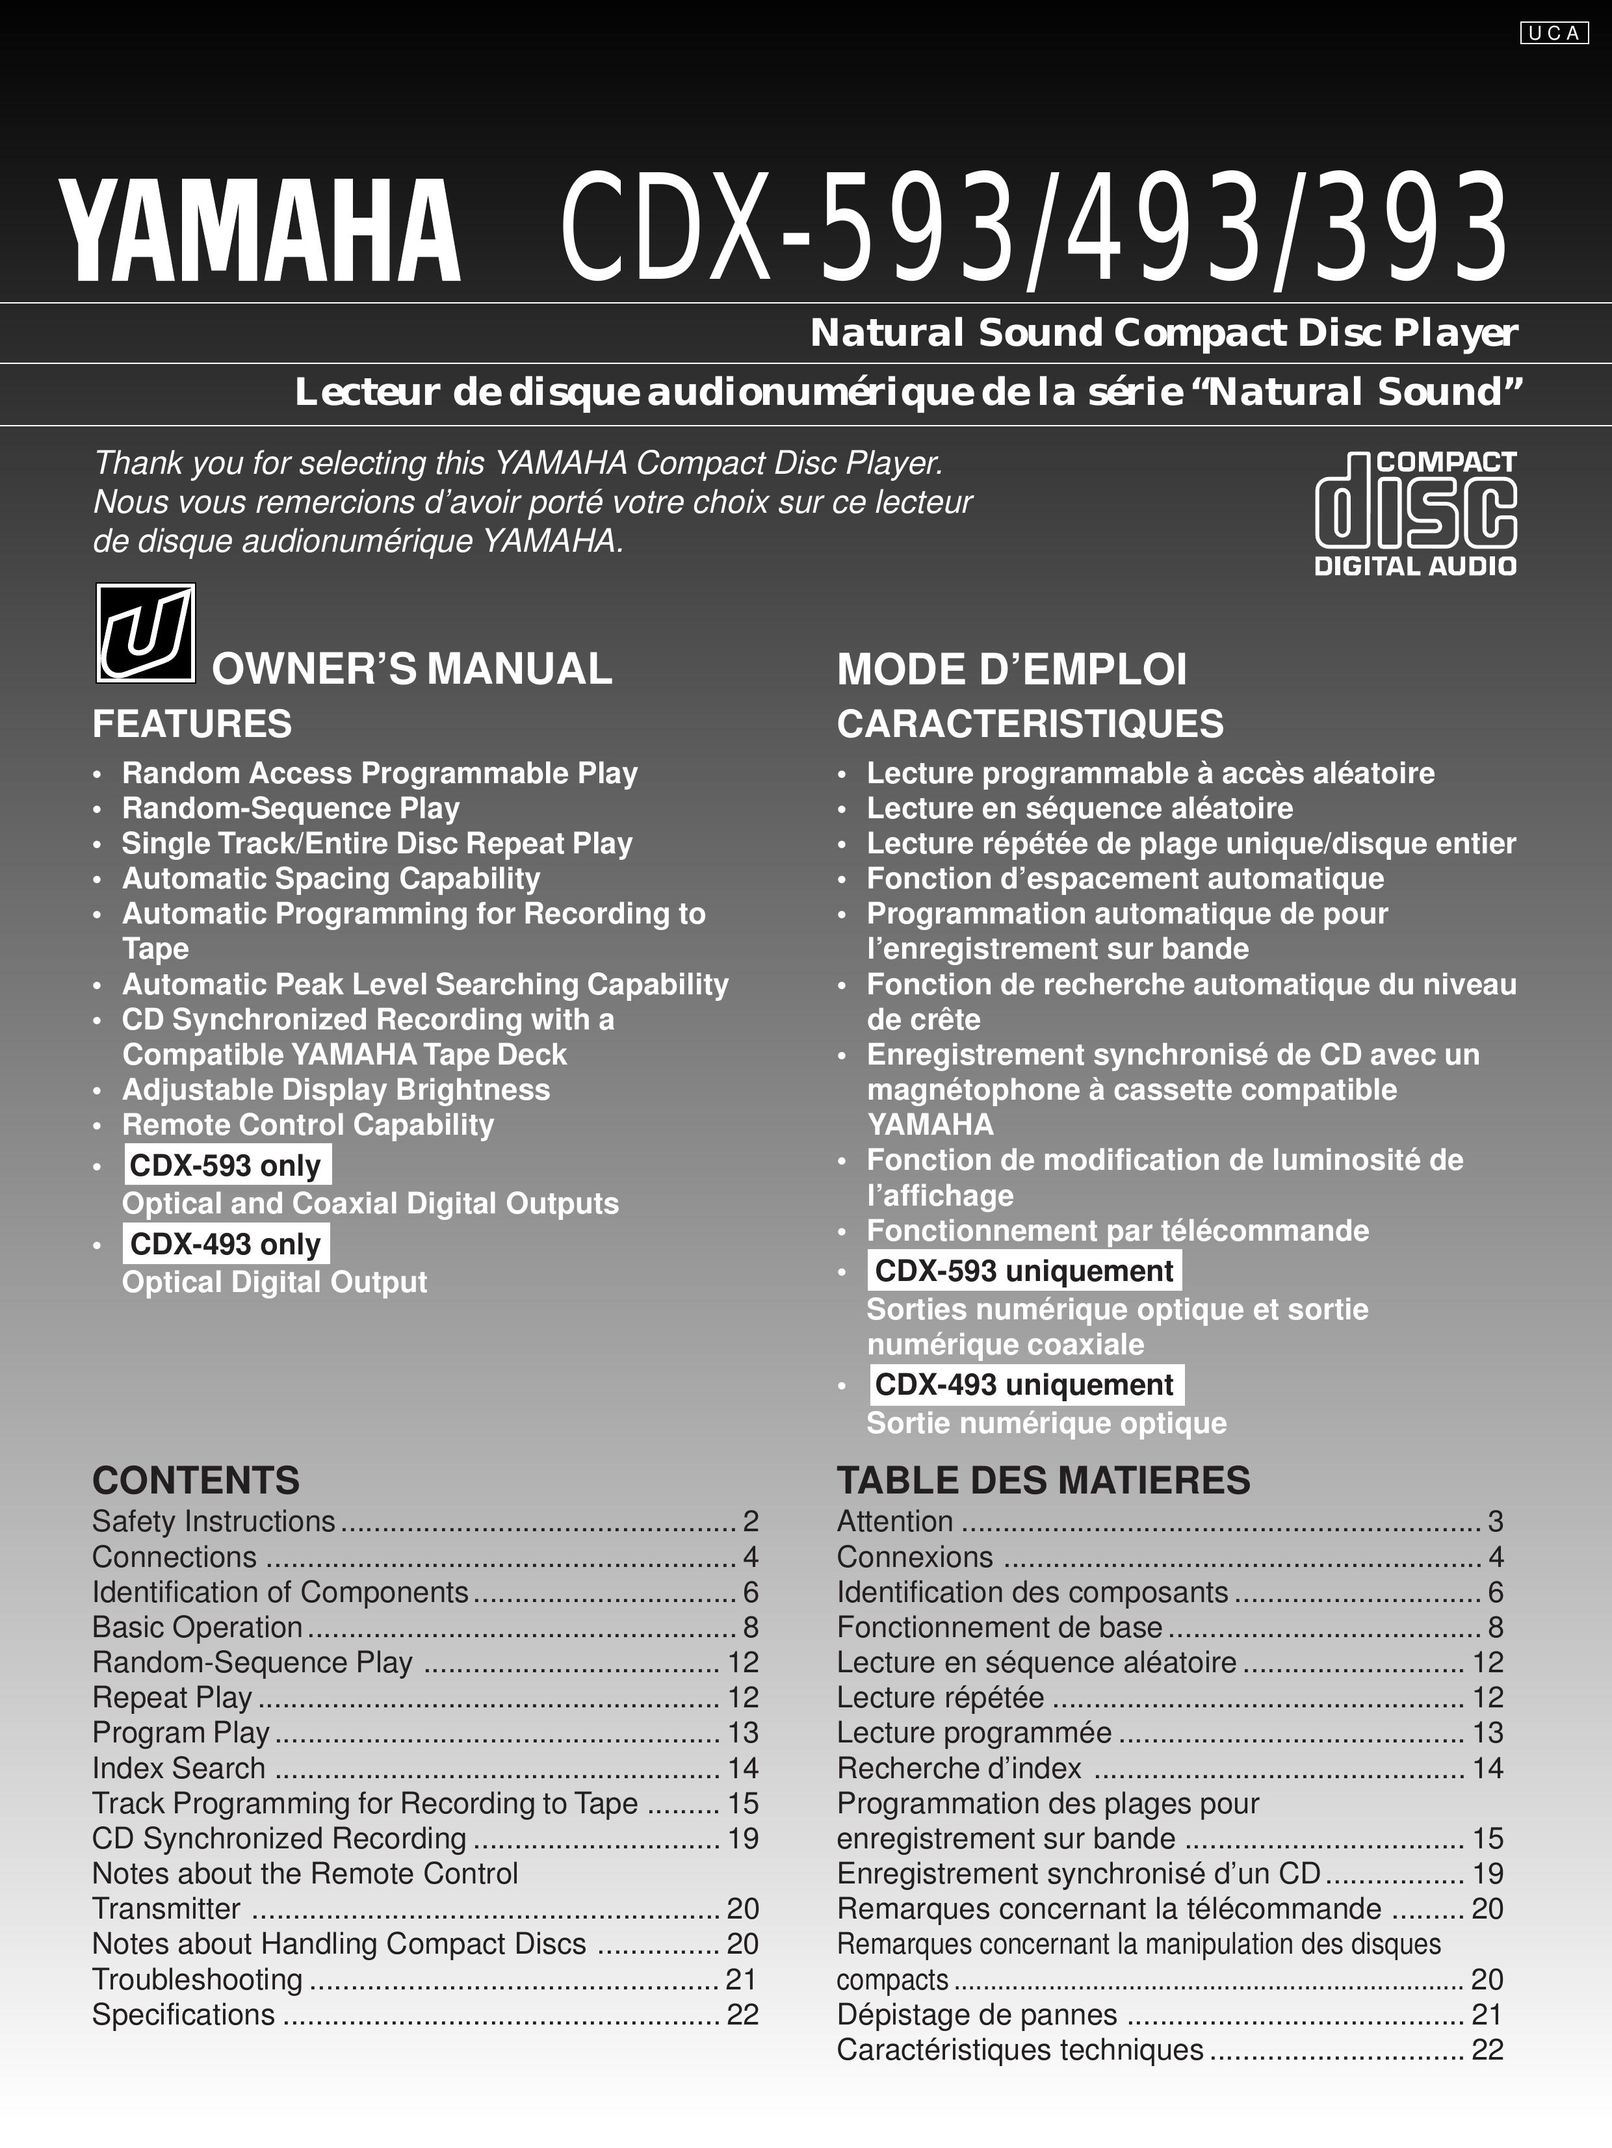 Yamaha CDX-593 CD Player User Manual